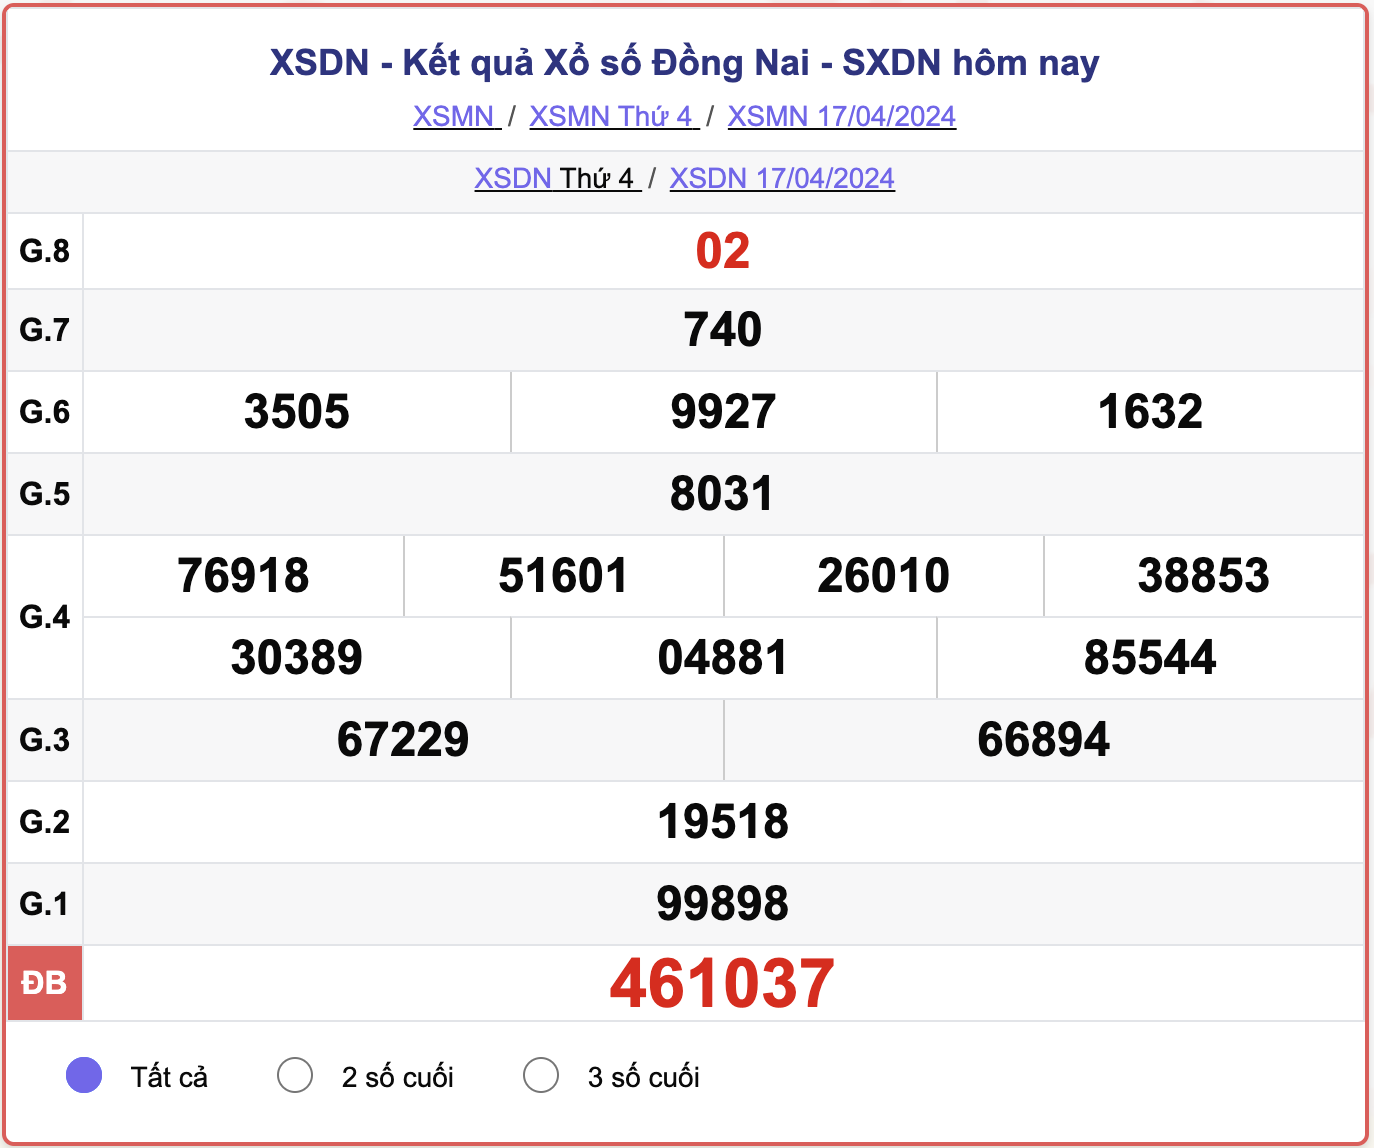 XSDN thứ 4, kết quả xổ số Đồng Nai ngày 17/4/2024.